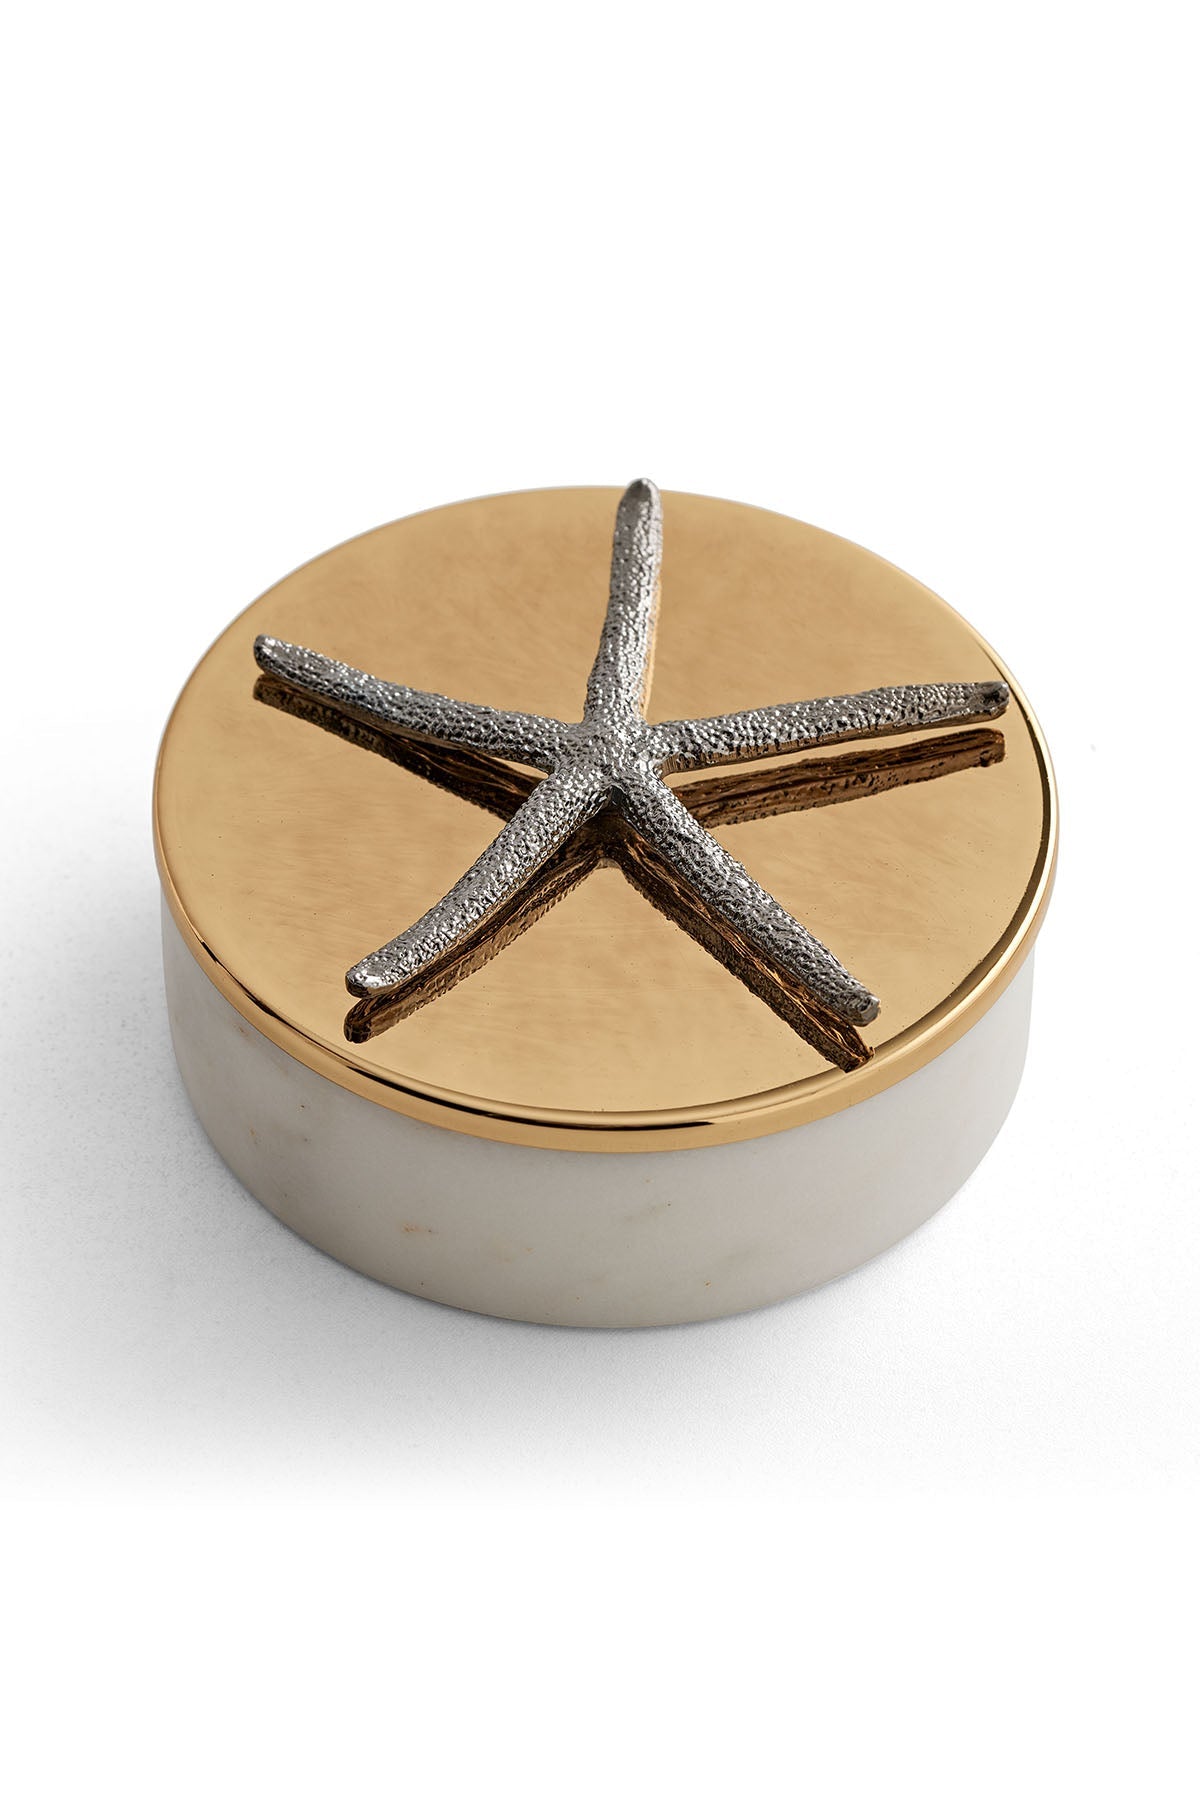 Starfish Marble Box